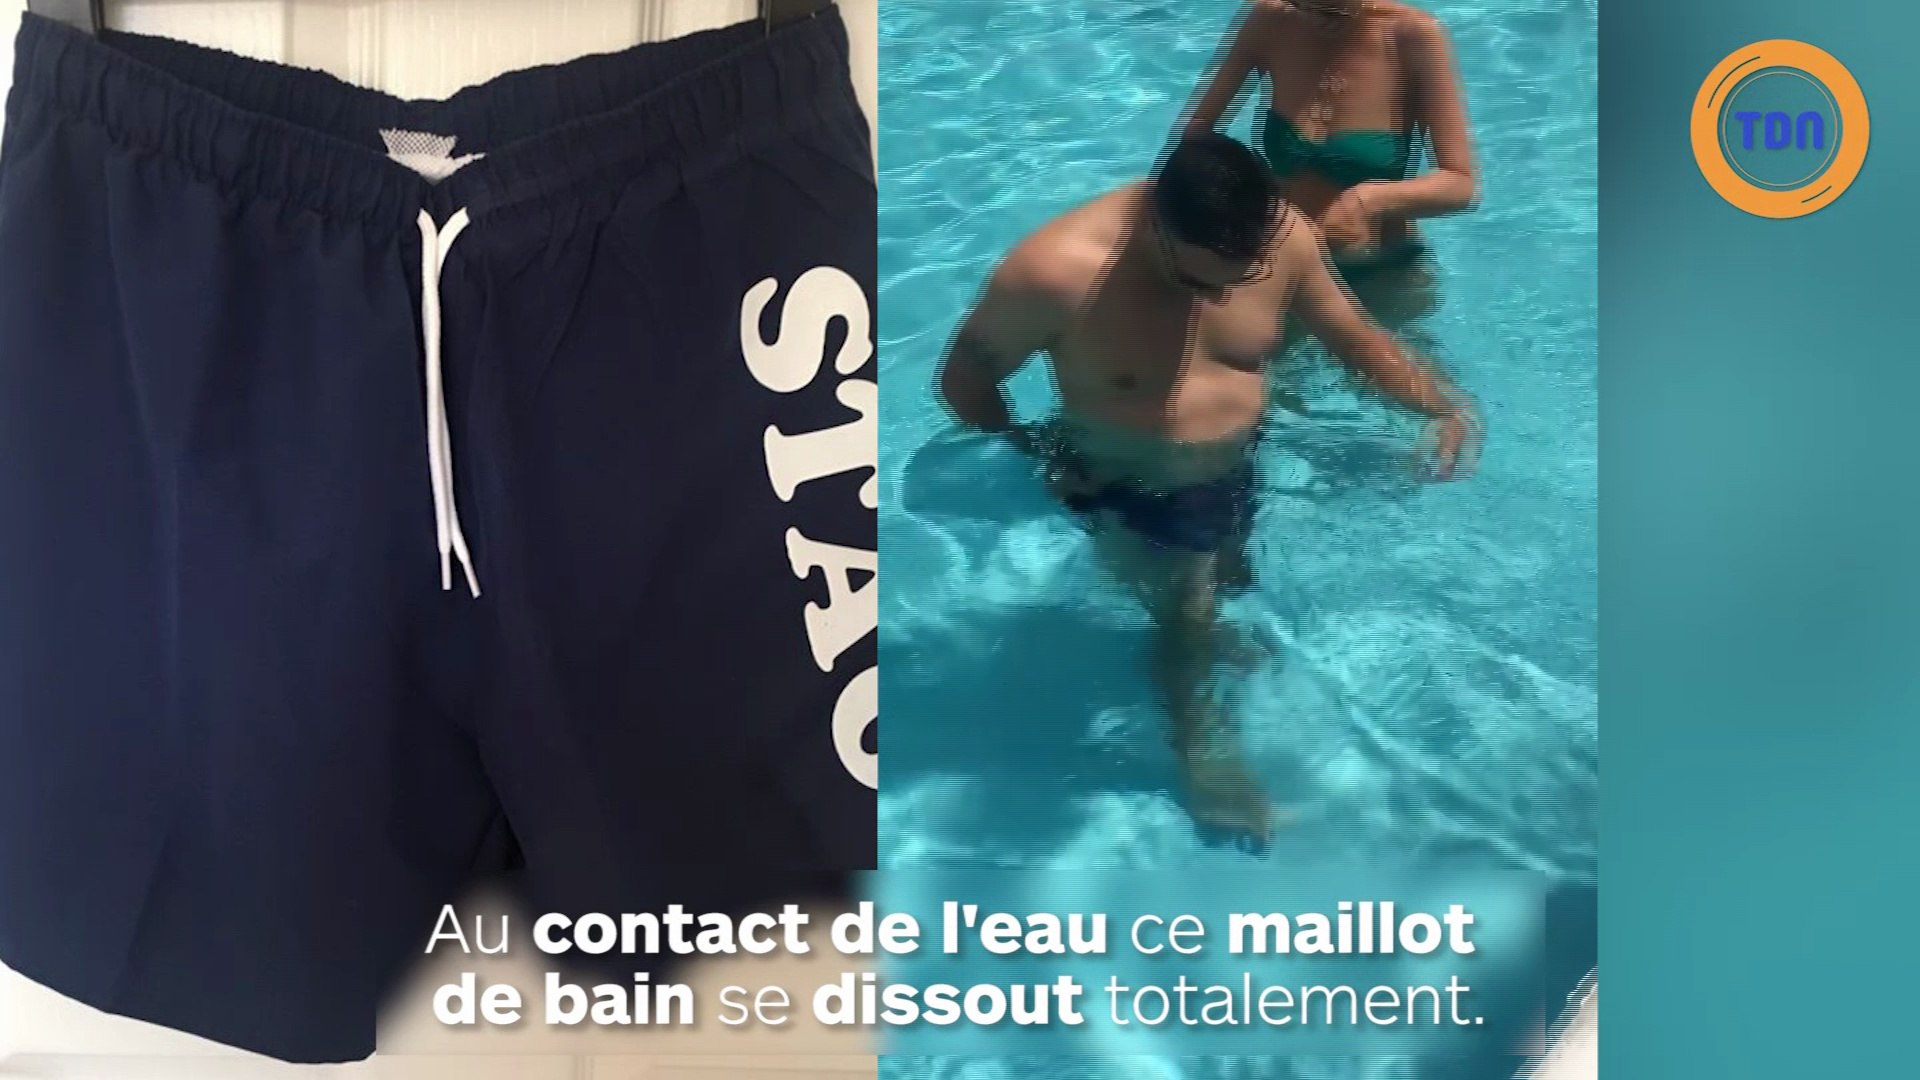 Une blague à faire entre amis dans la piscine : le maillot de bain soluble  ! - Vidéo Dailymotion